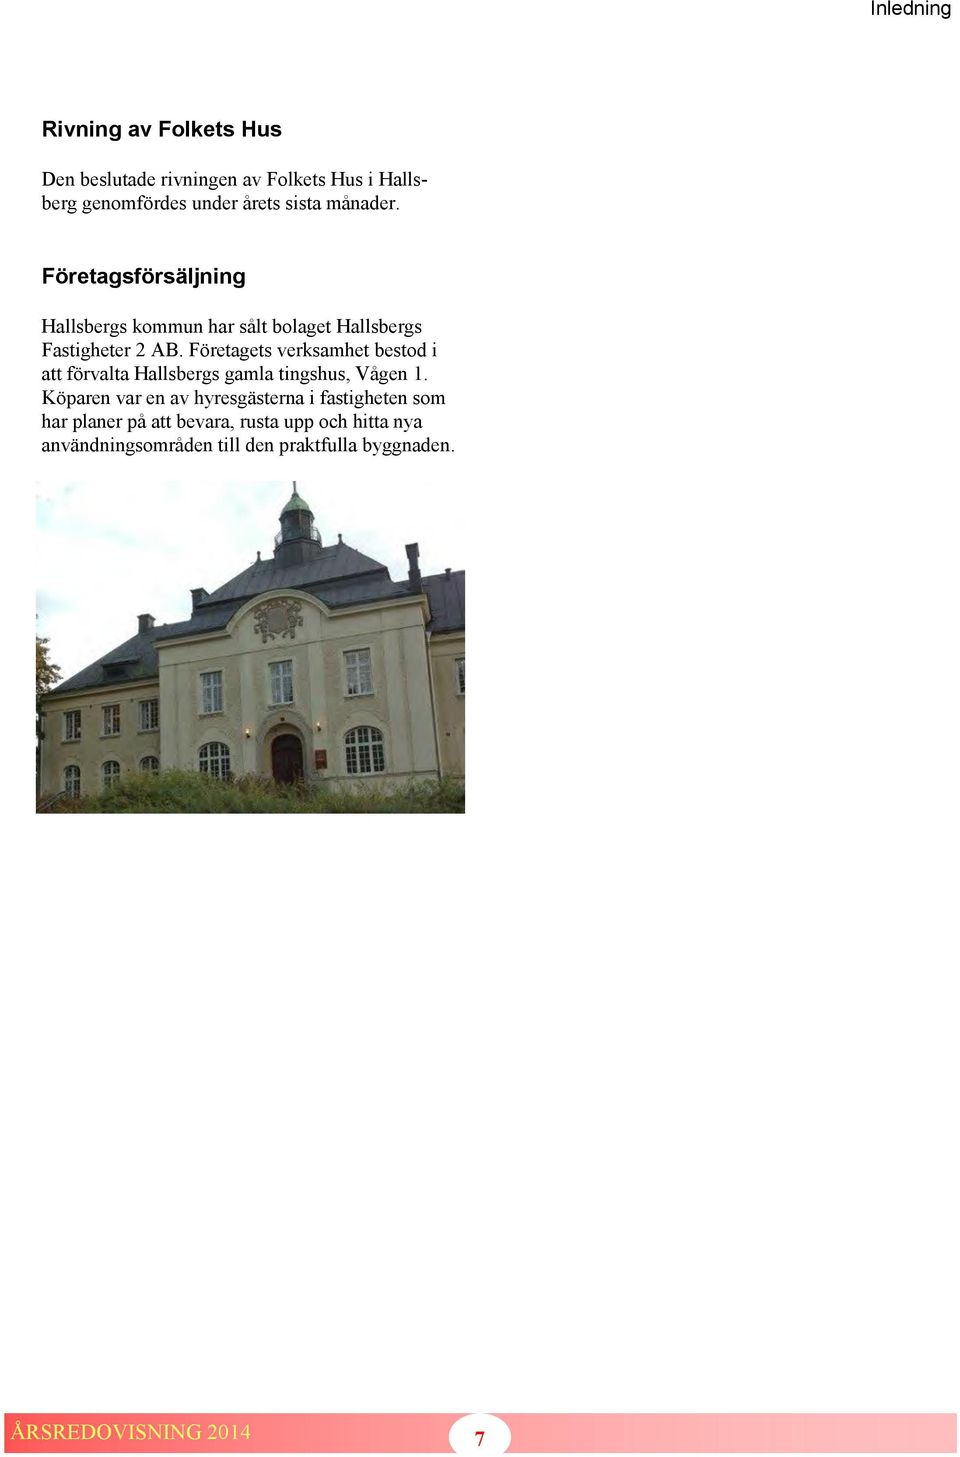 Företagets verksamhet bestod i att förvalta Hallsbergs gamla tingshus, Vågen 1.